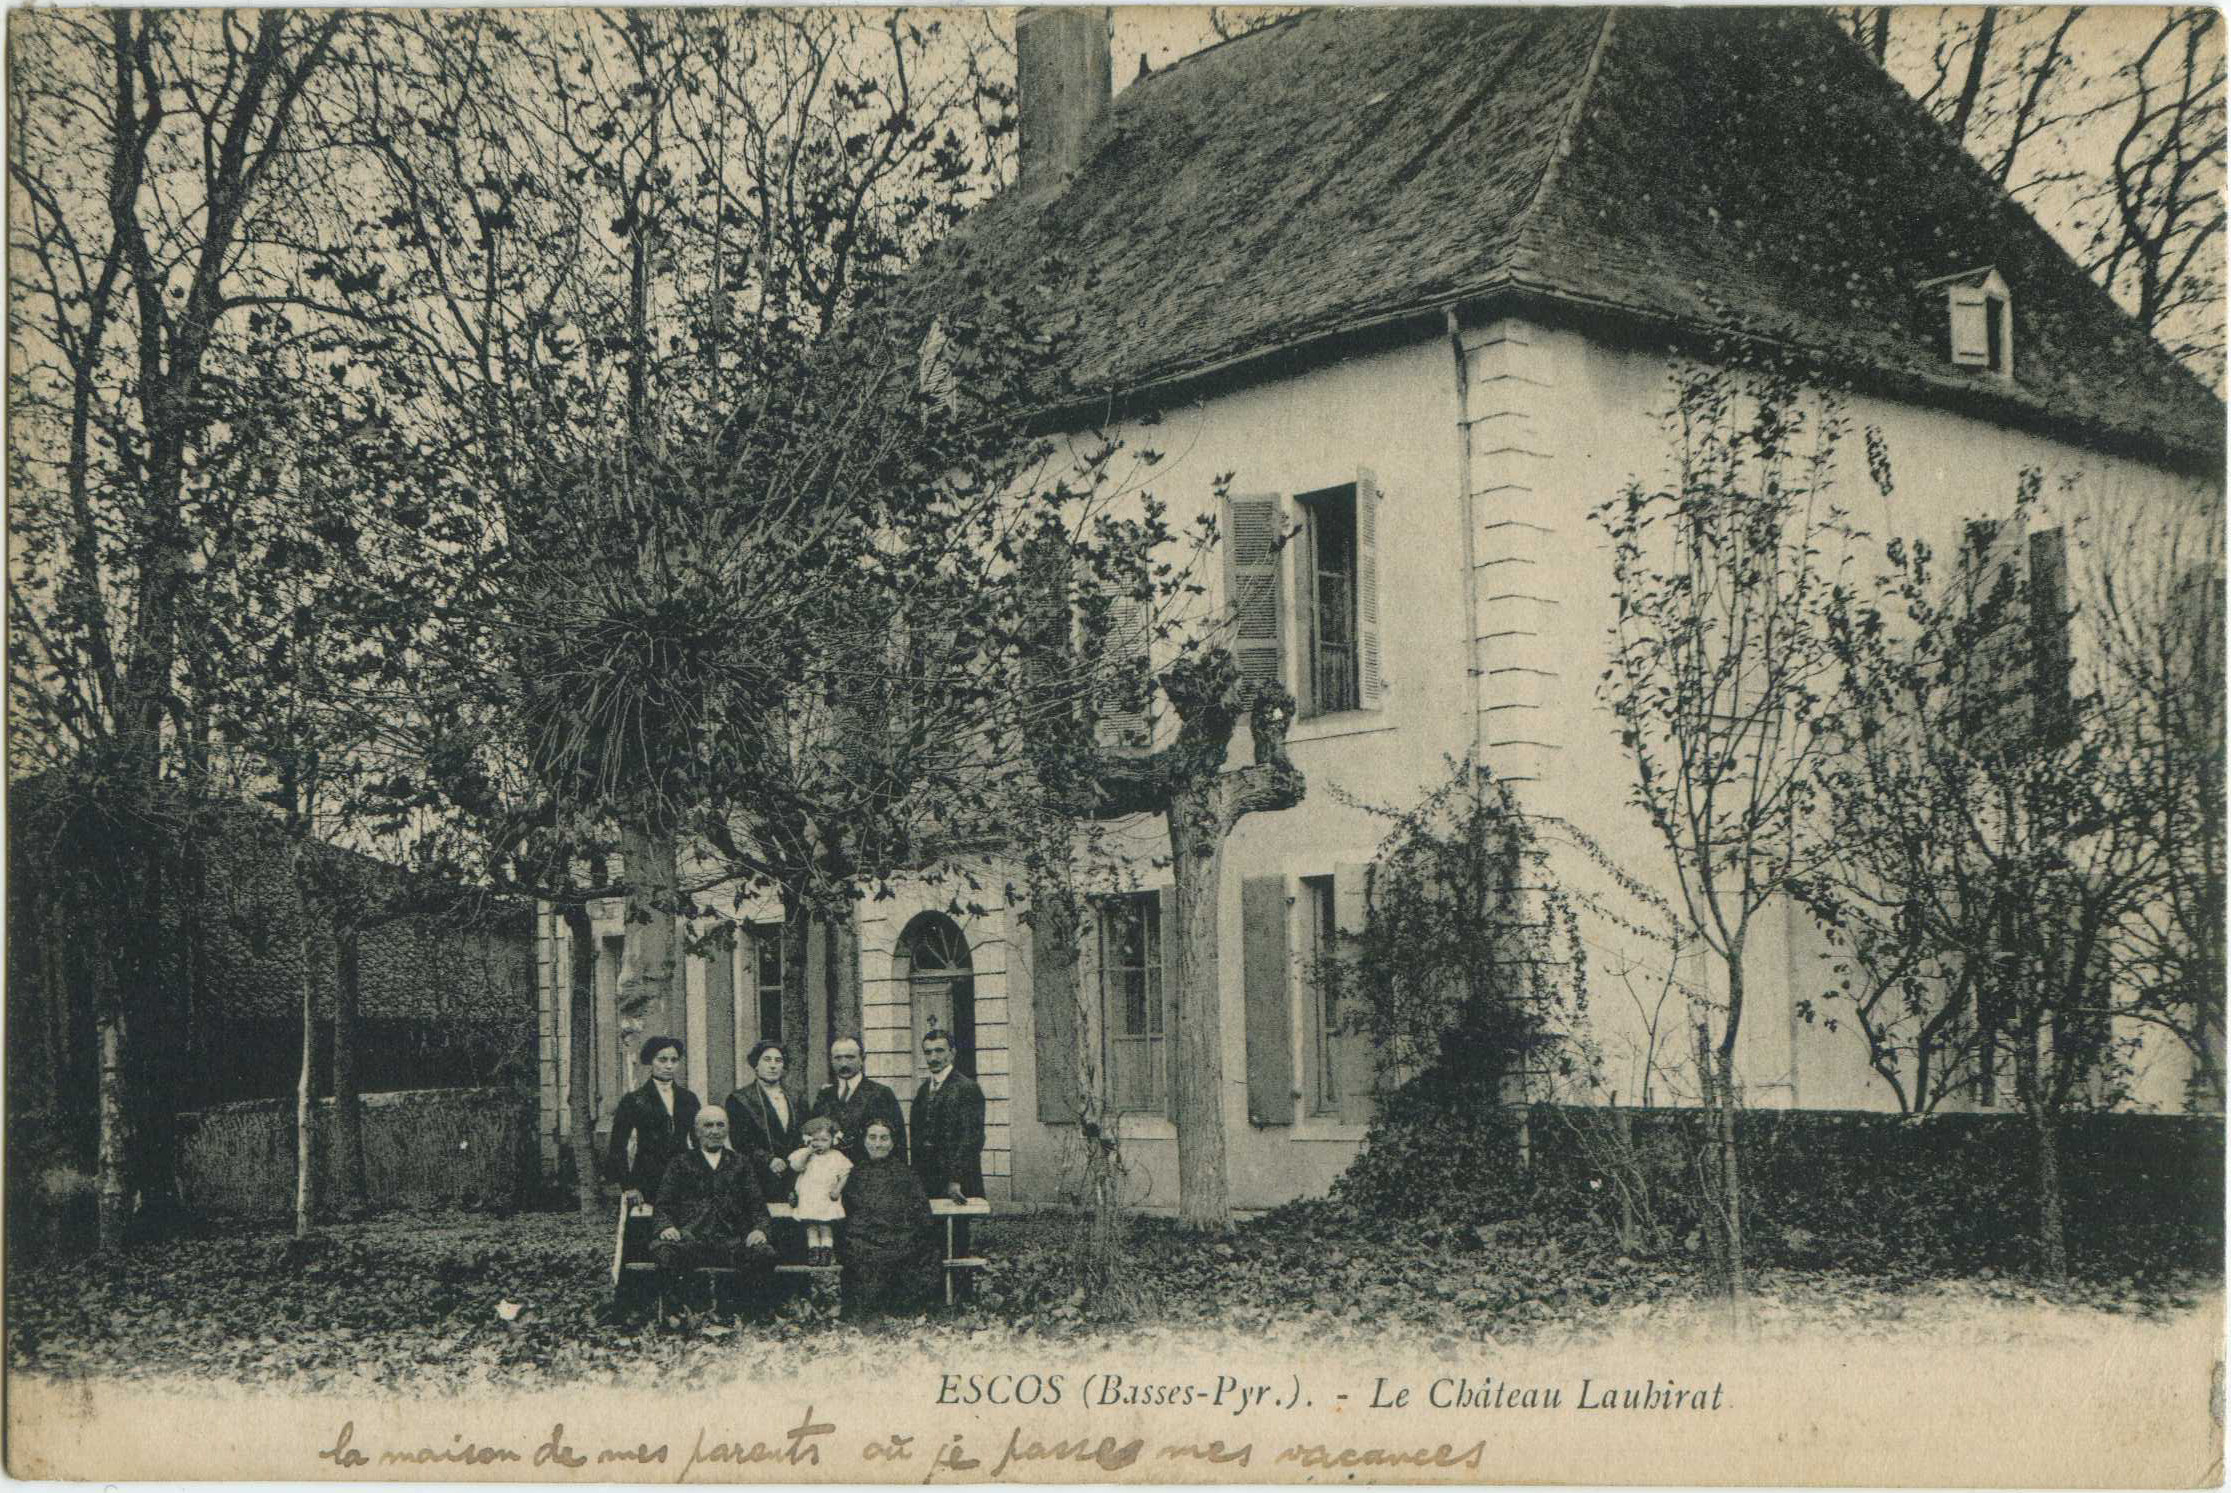 Escos - Le Château Lauhirat